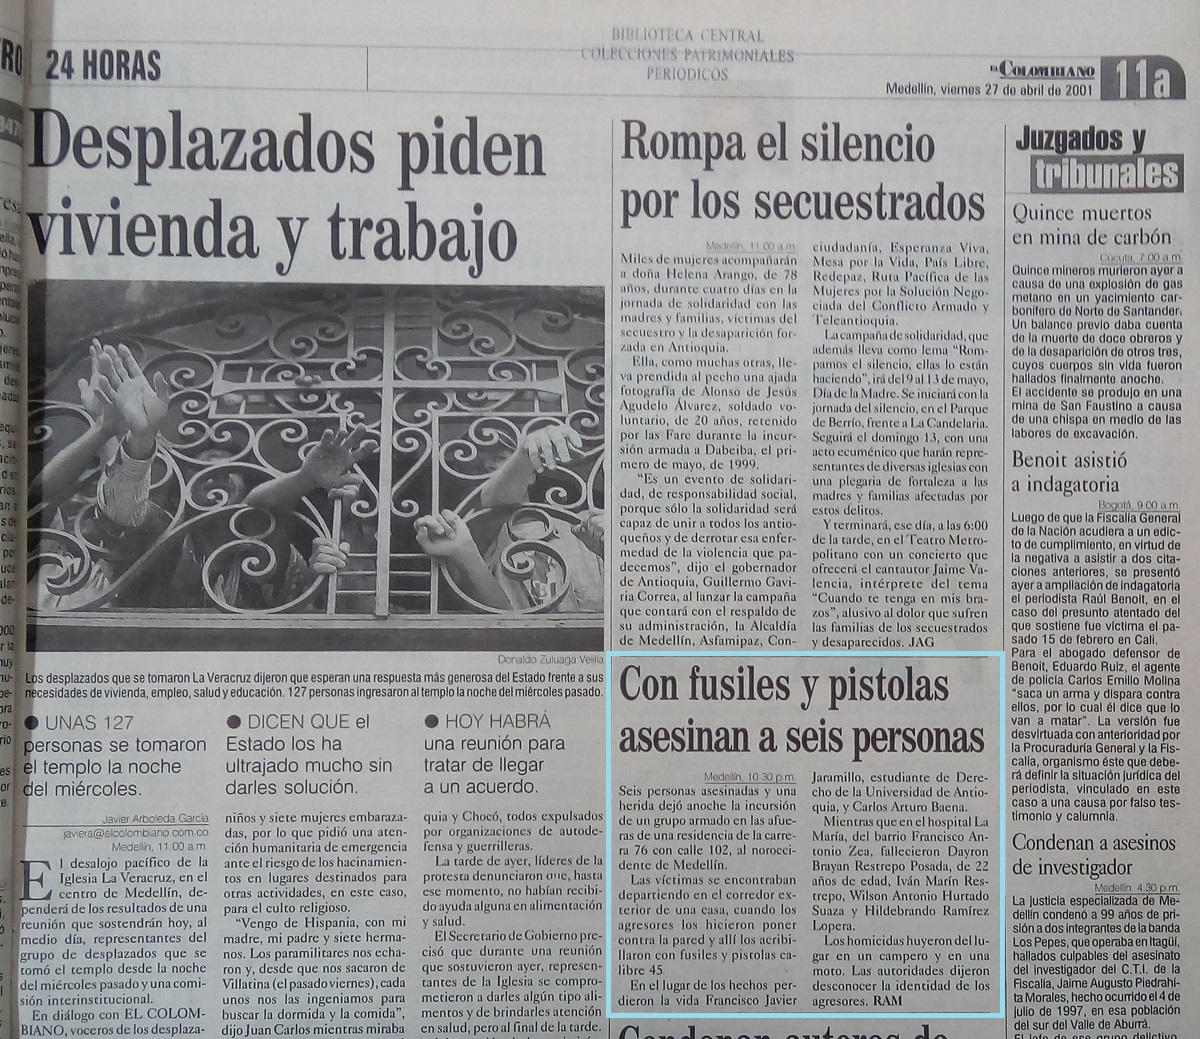 Fotografía tomada de la edición del 27 de abril del 2001 del periódico El Colombiano